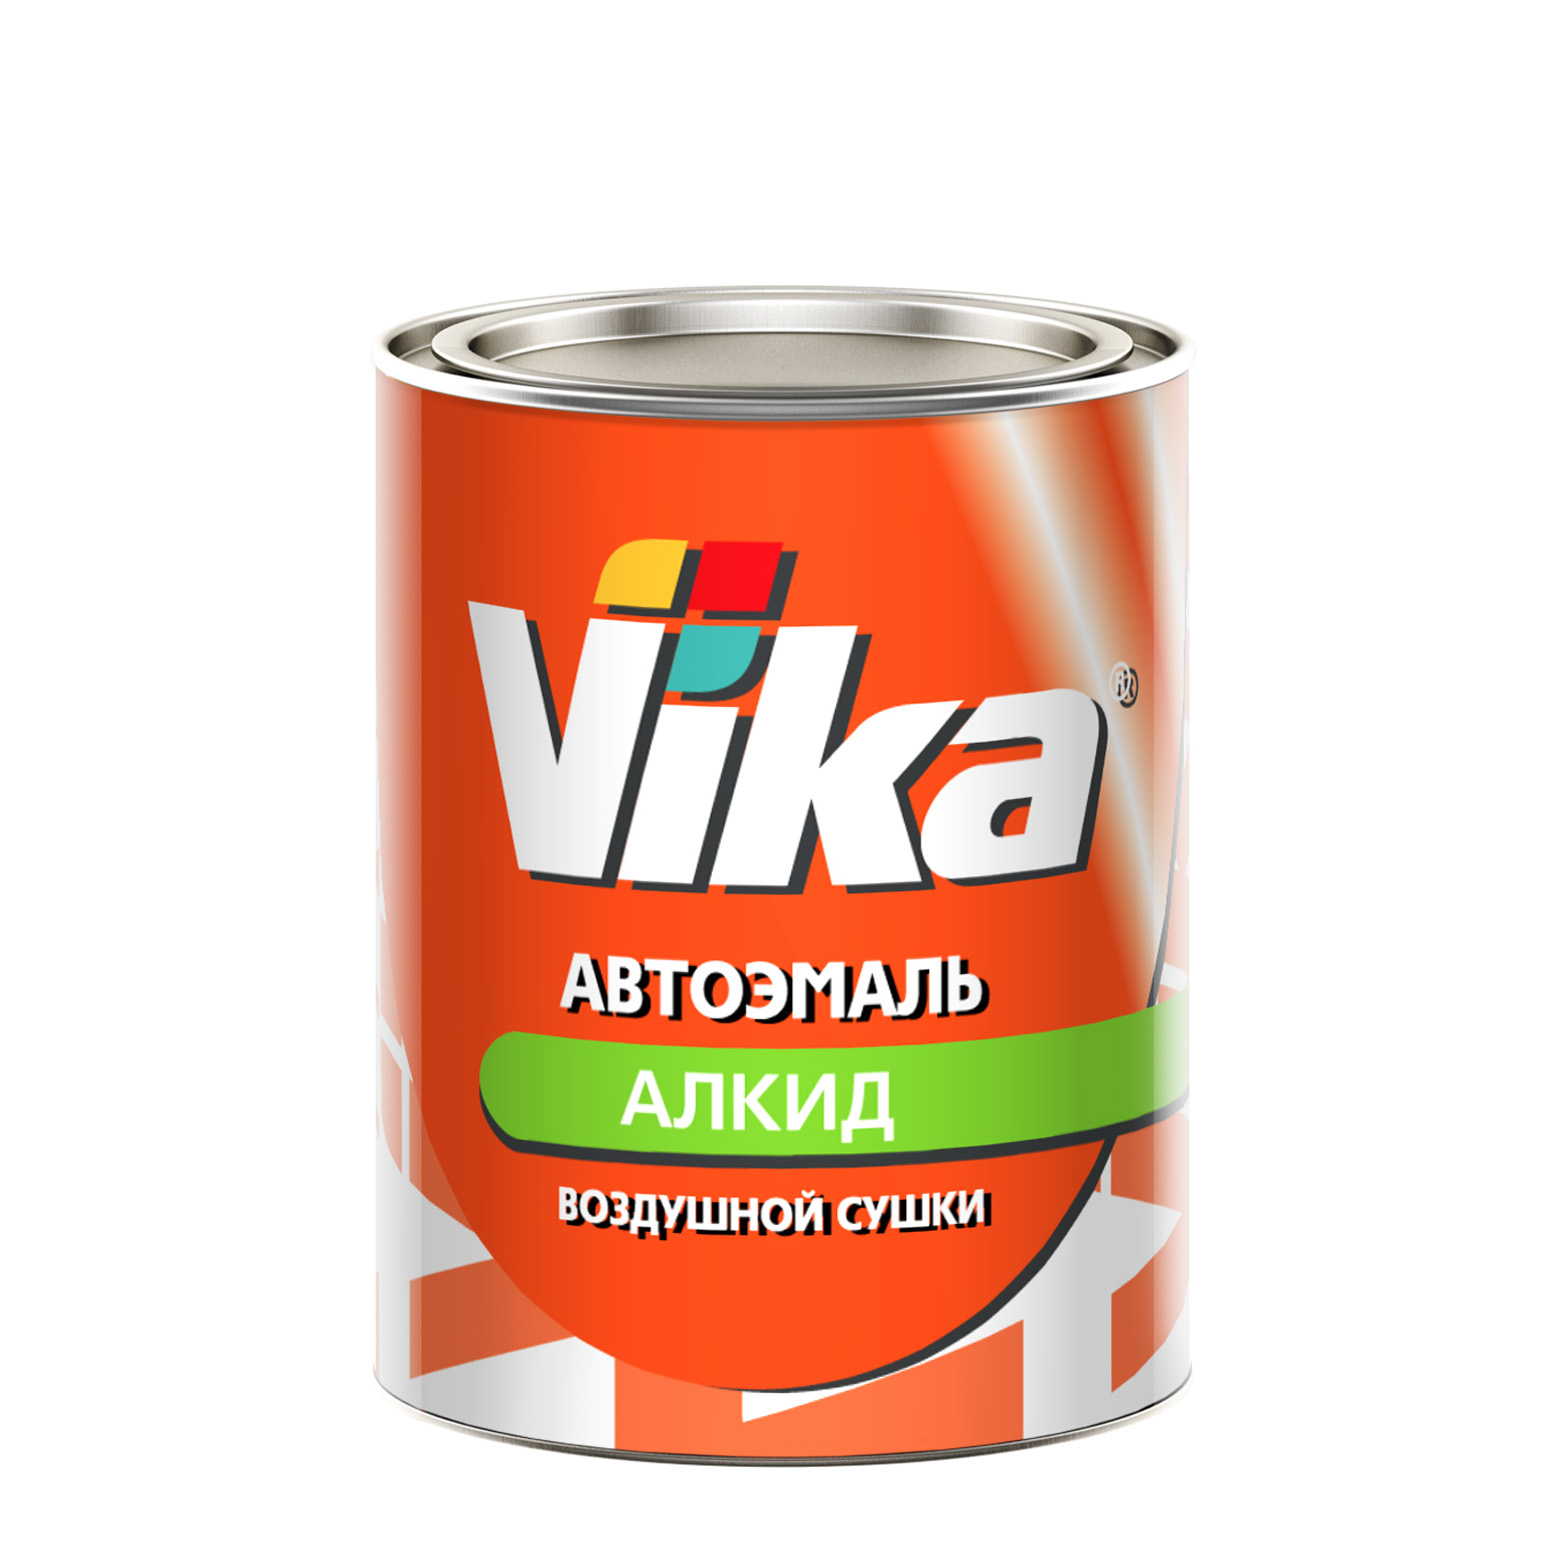 Фото 1 - Автоэмаль Vika-60, цвет 201 Белая алкидная глянцевая естественной сушки - 0,8 кг.